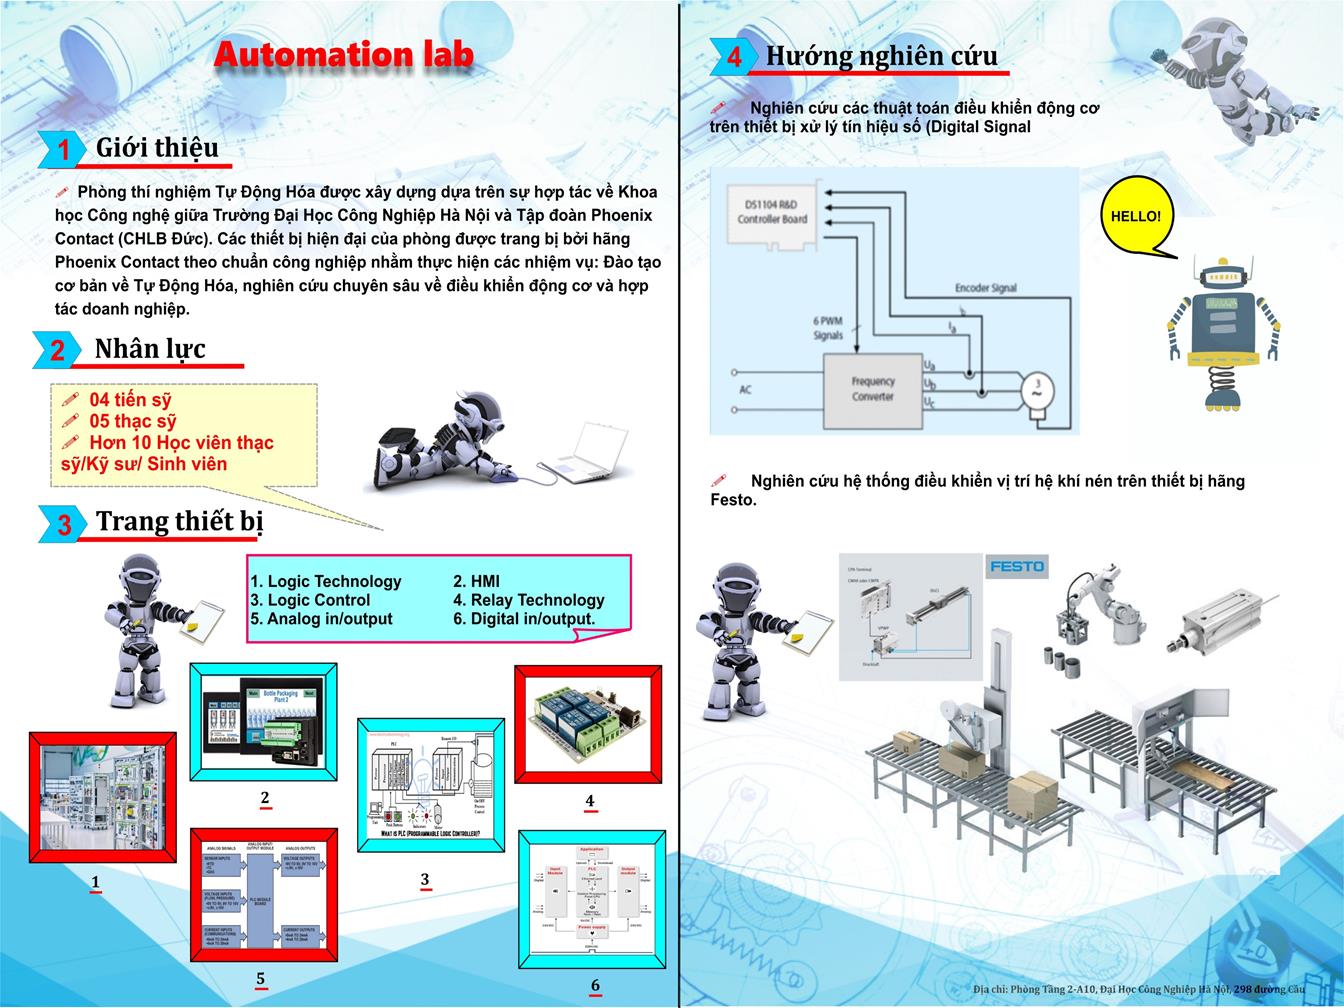 Automation Laboratory